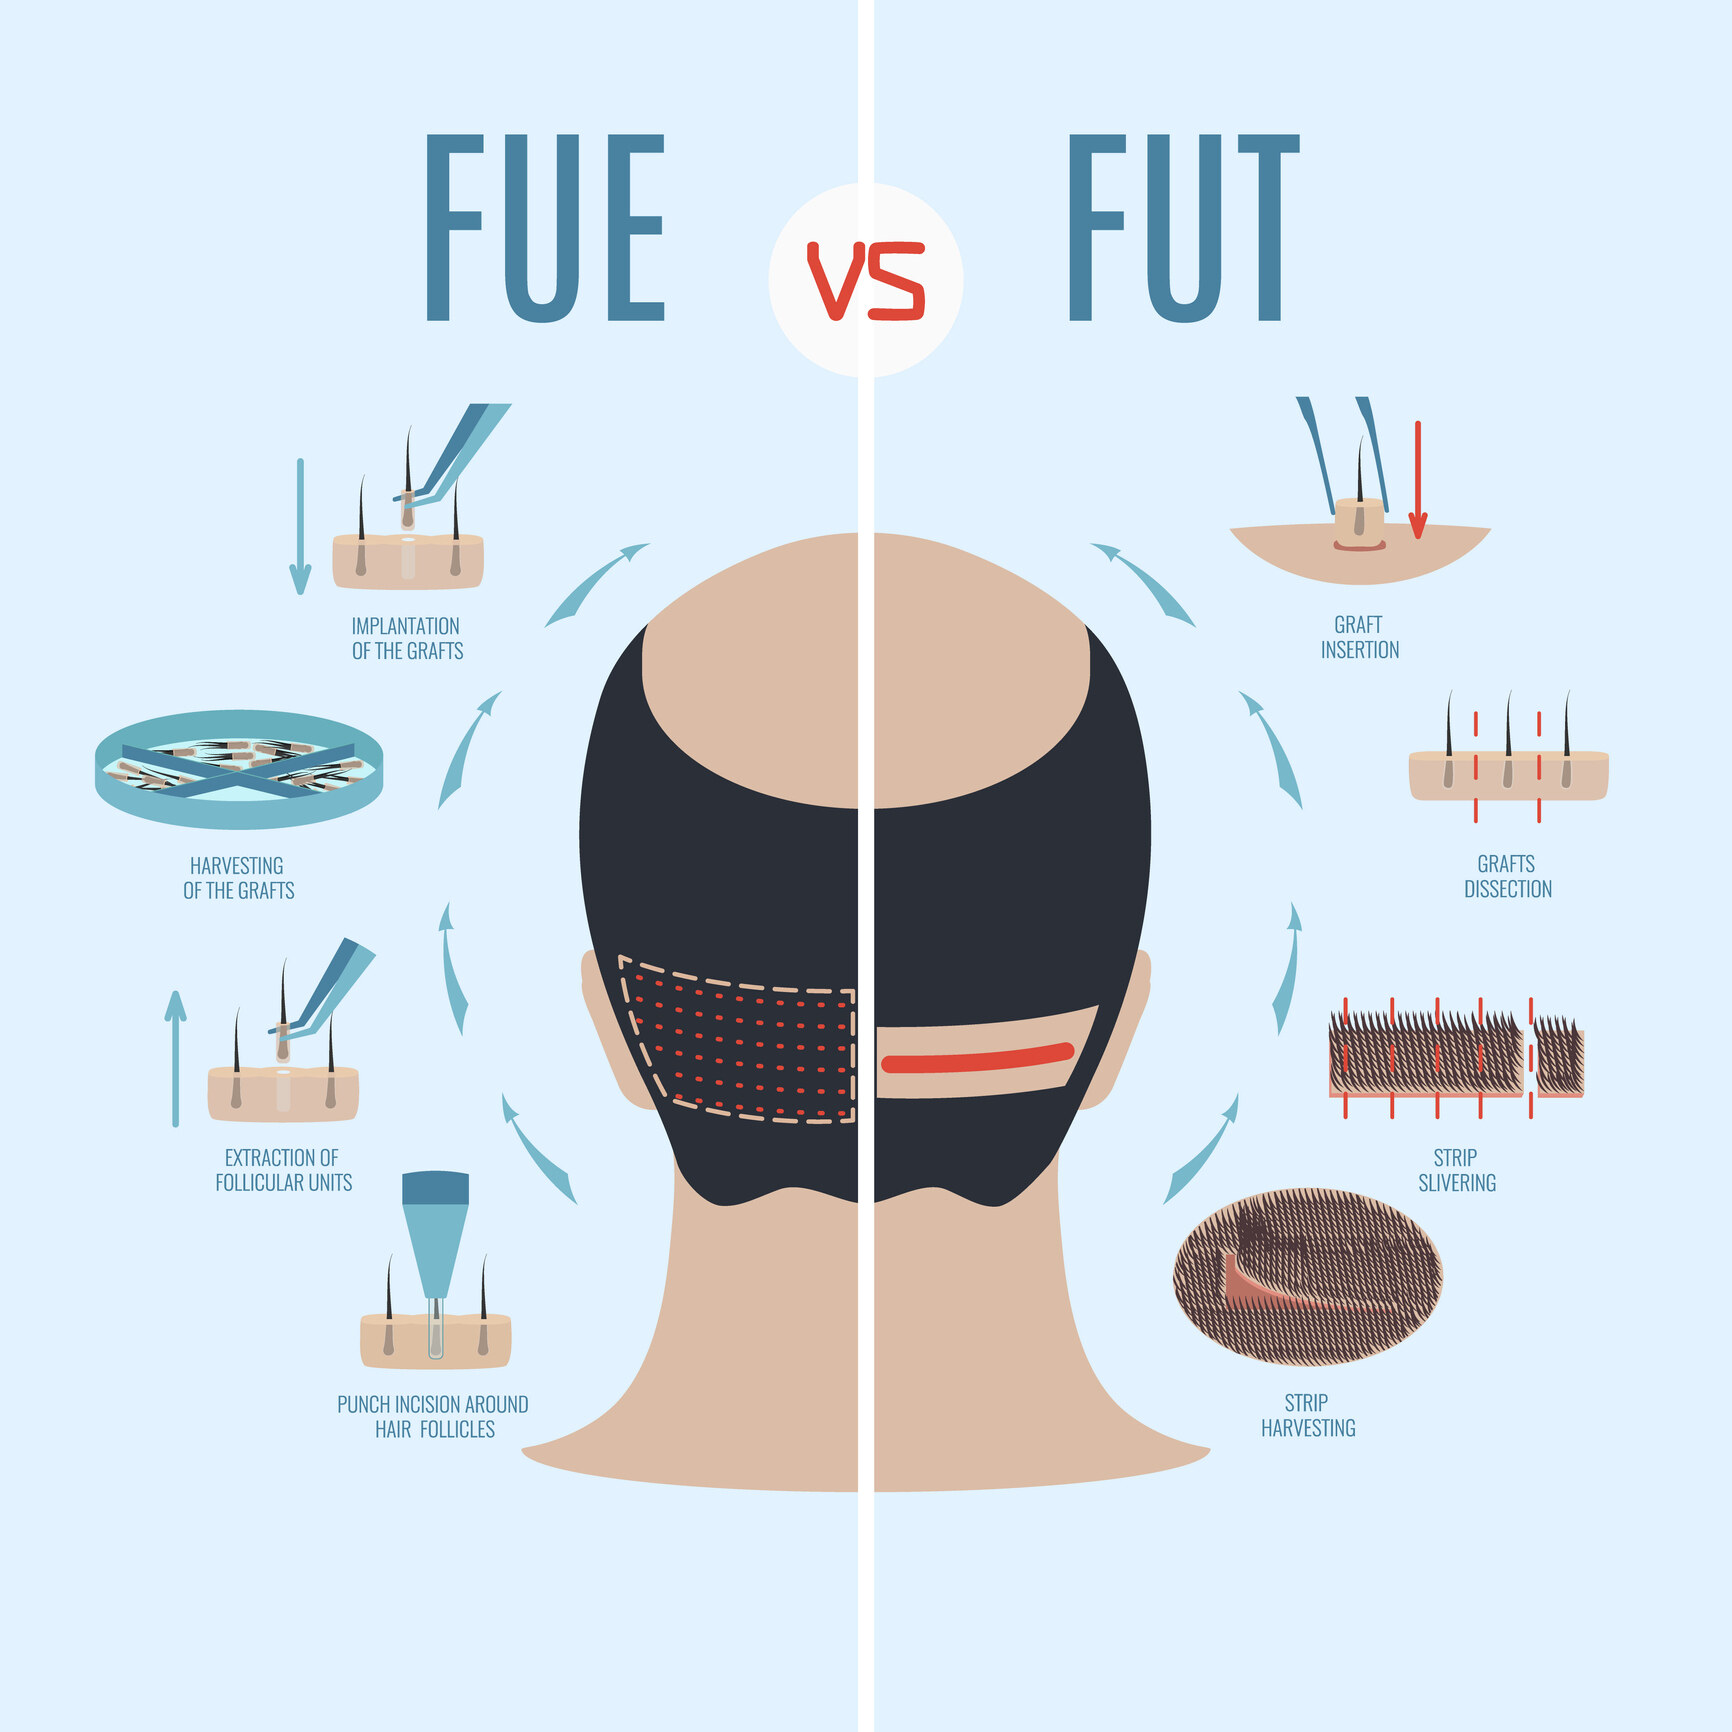 以花費的時間而言， FUE（鑽毛囊）會比 FUT（取頭皮）更精密，需要更長的時間，因此 FUE 會比 FUT 收費更貴。﻿